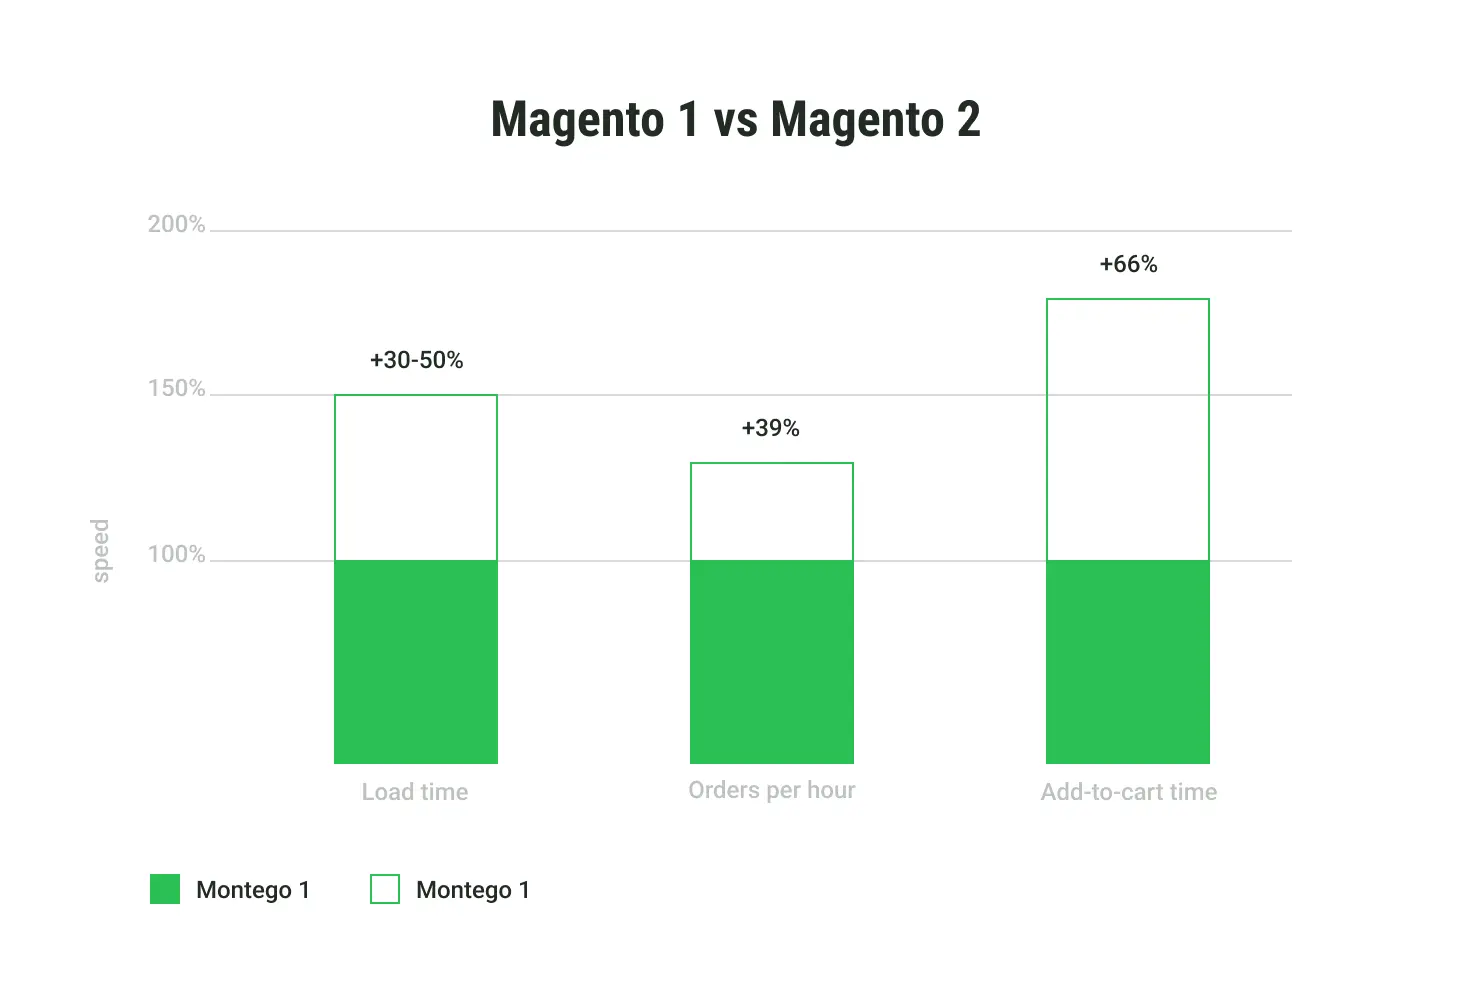 Magento 2 over Magento advantages